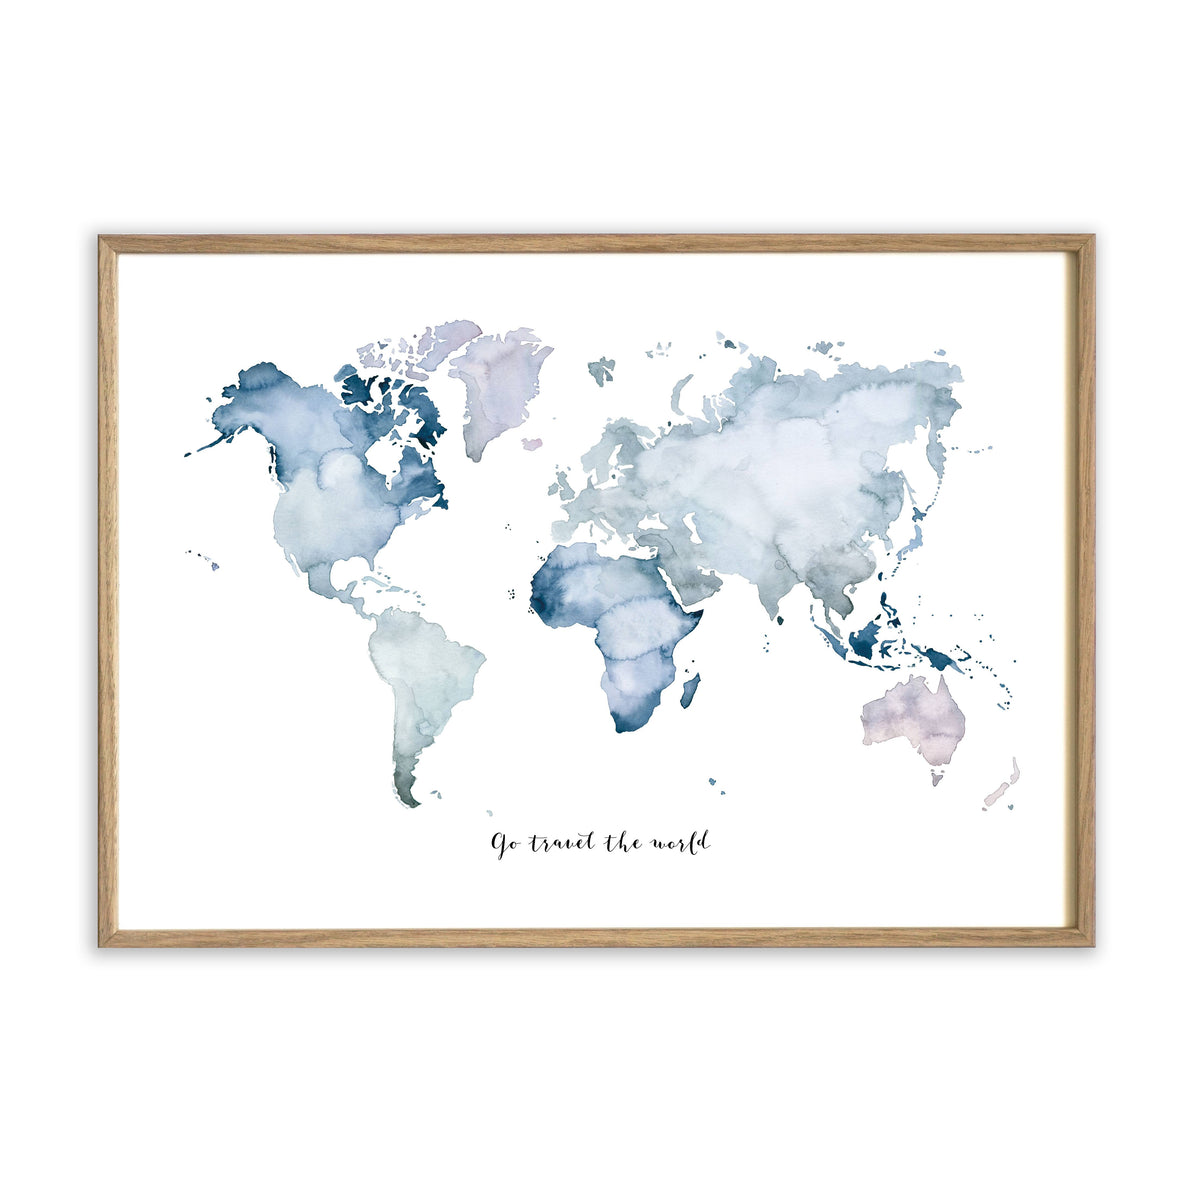 Kunstdruck - Weltkarte | Go travel the world Kunstdruck Leo la Douce 